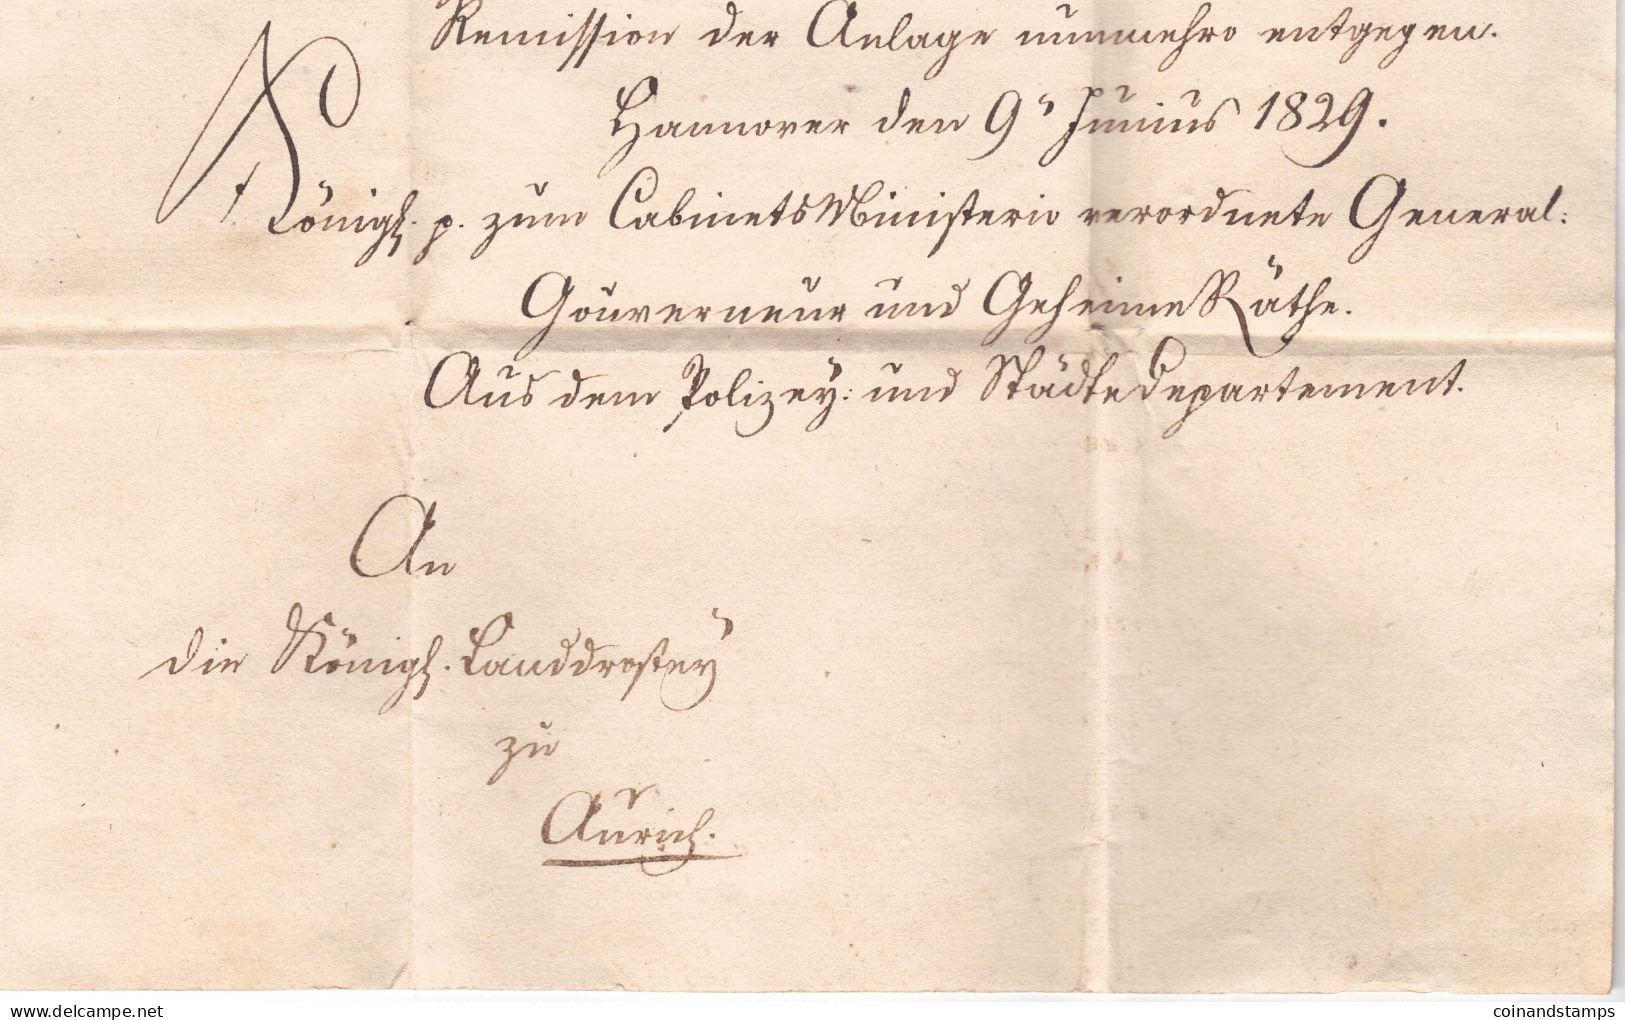 Hannover Dienstbrief 1829 mit Stempeltaxe 2 Groschen orig. gelaufen nach Norden, mit kompletten Inhalt, feinst